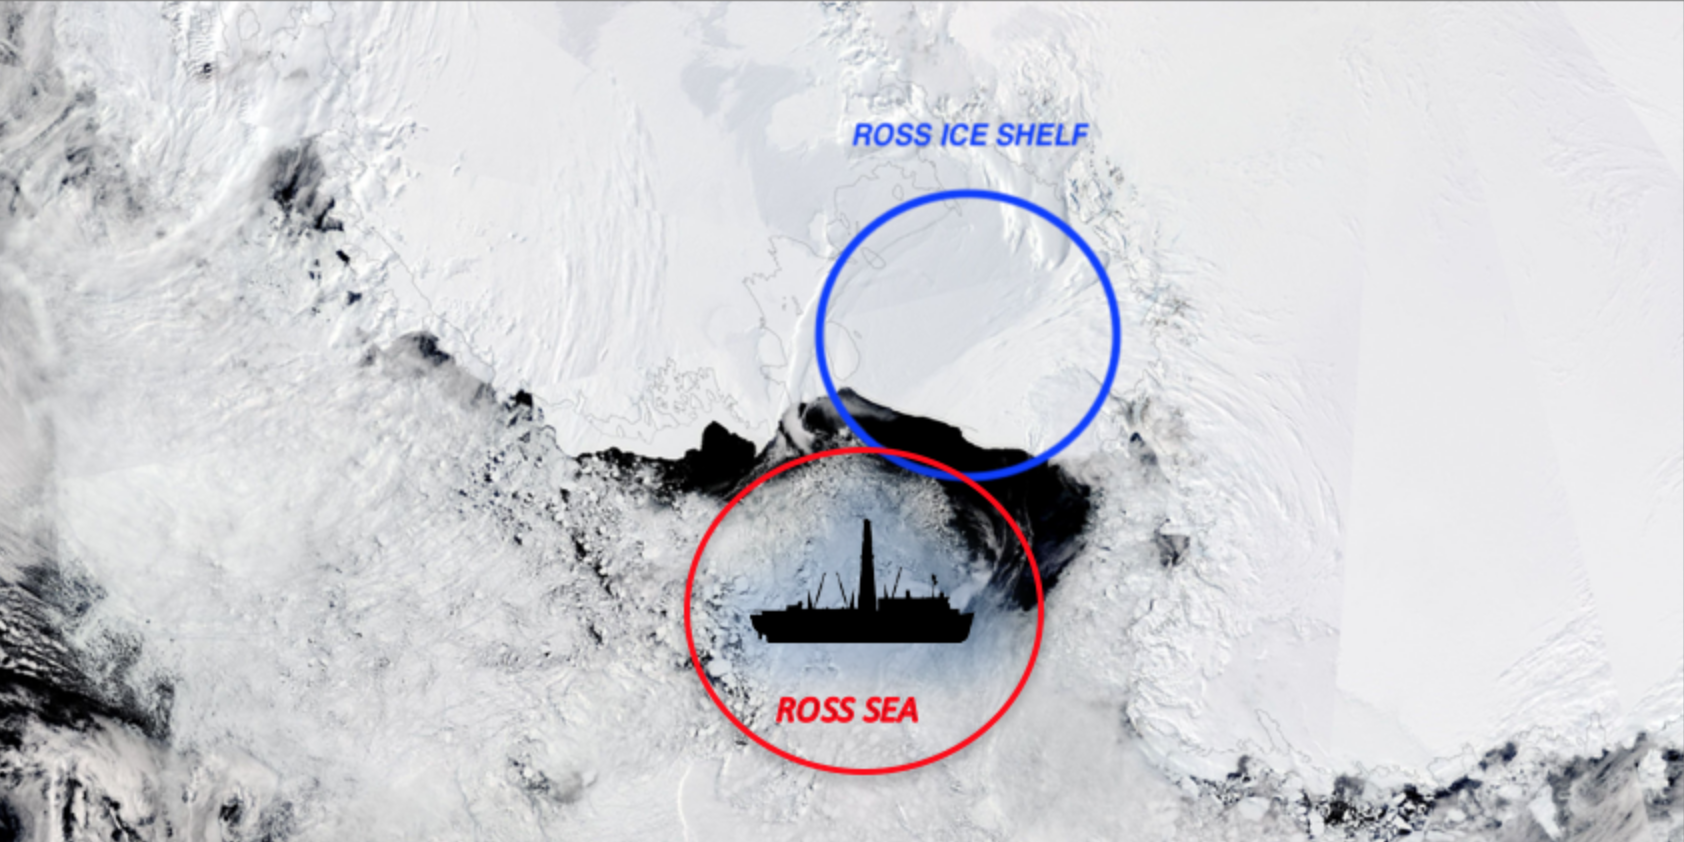 L’Istituto Nazionale di Oceanografia e di Geofisica Sperimentale - OGS torna a indagare l’Antartide e i cambiamenti climatici